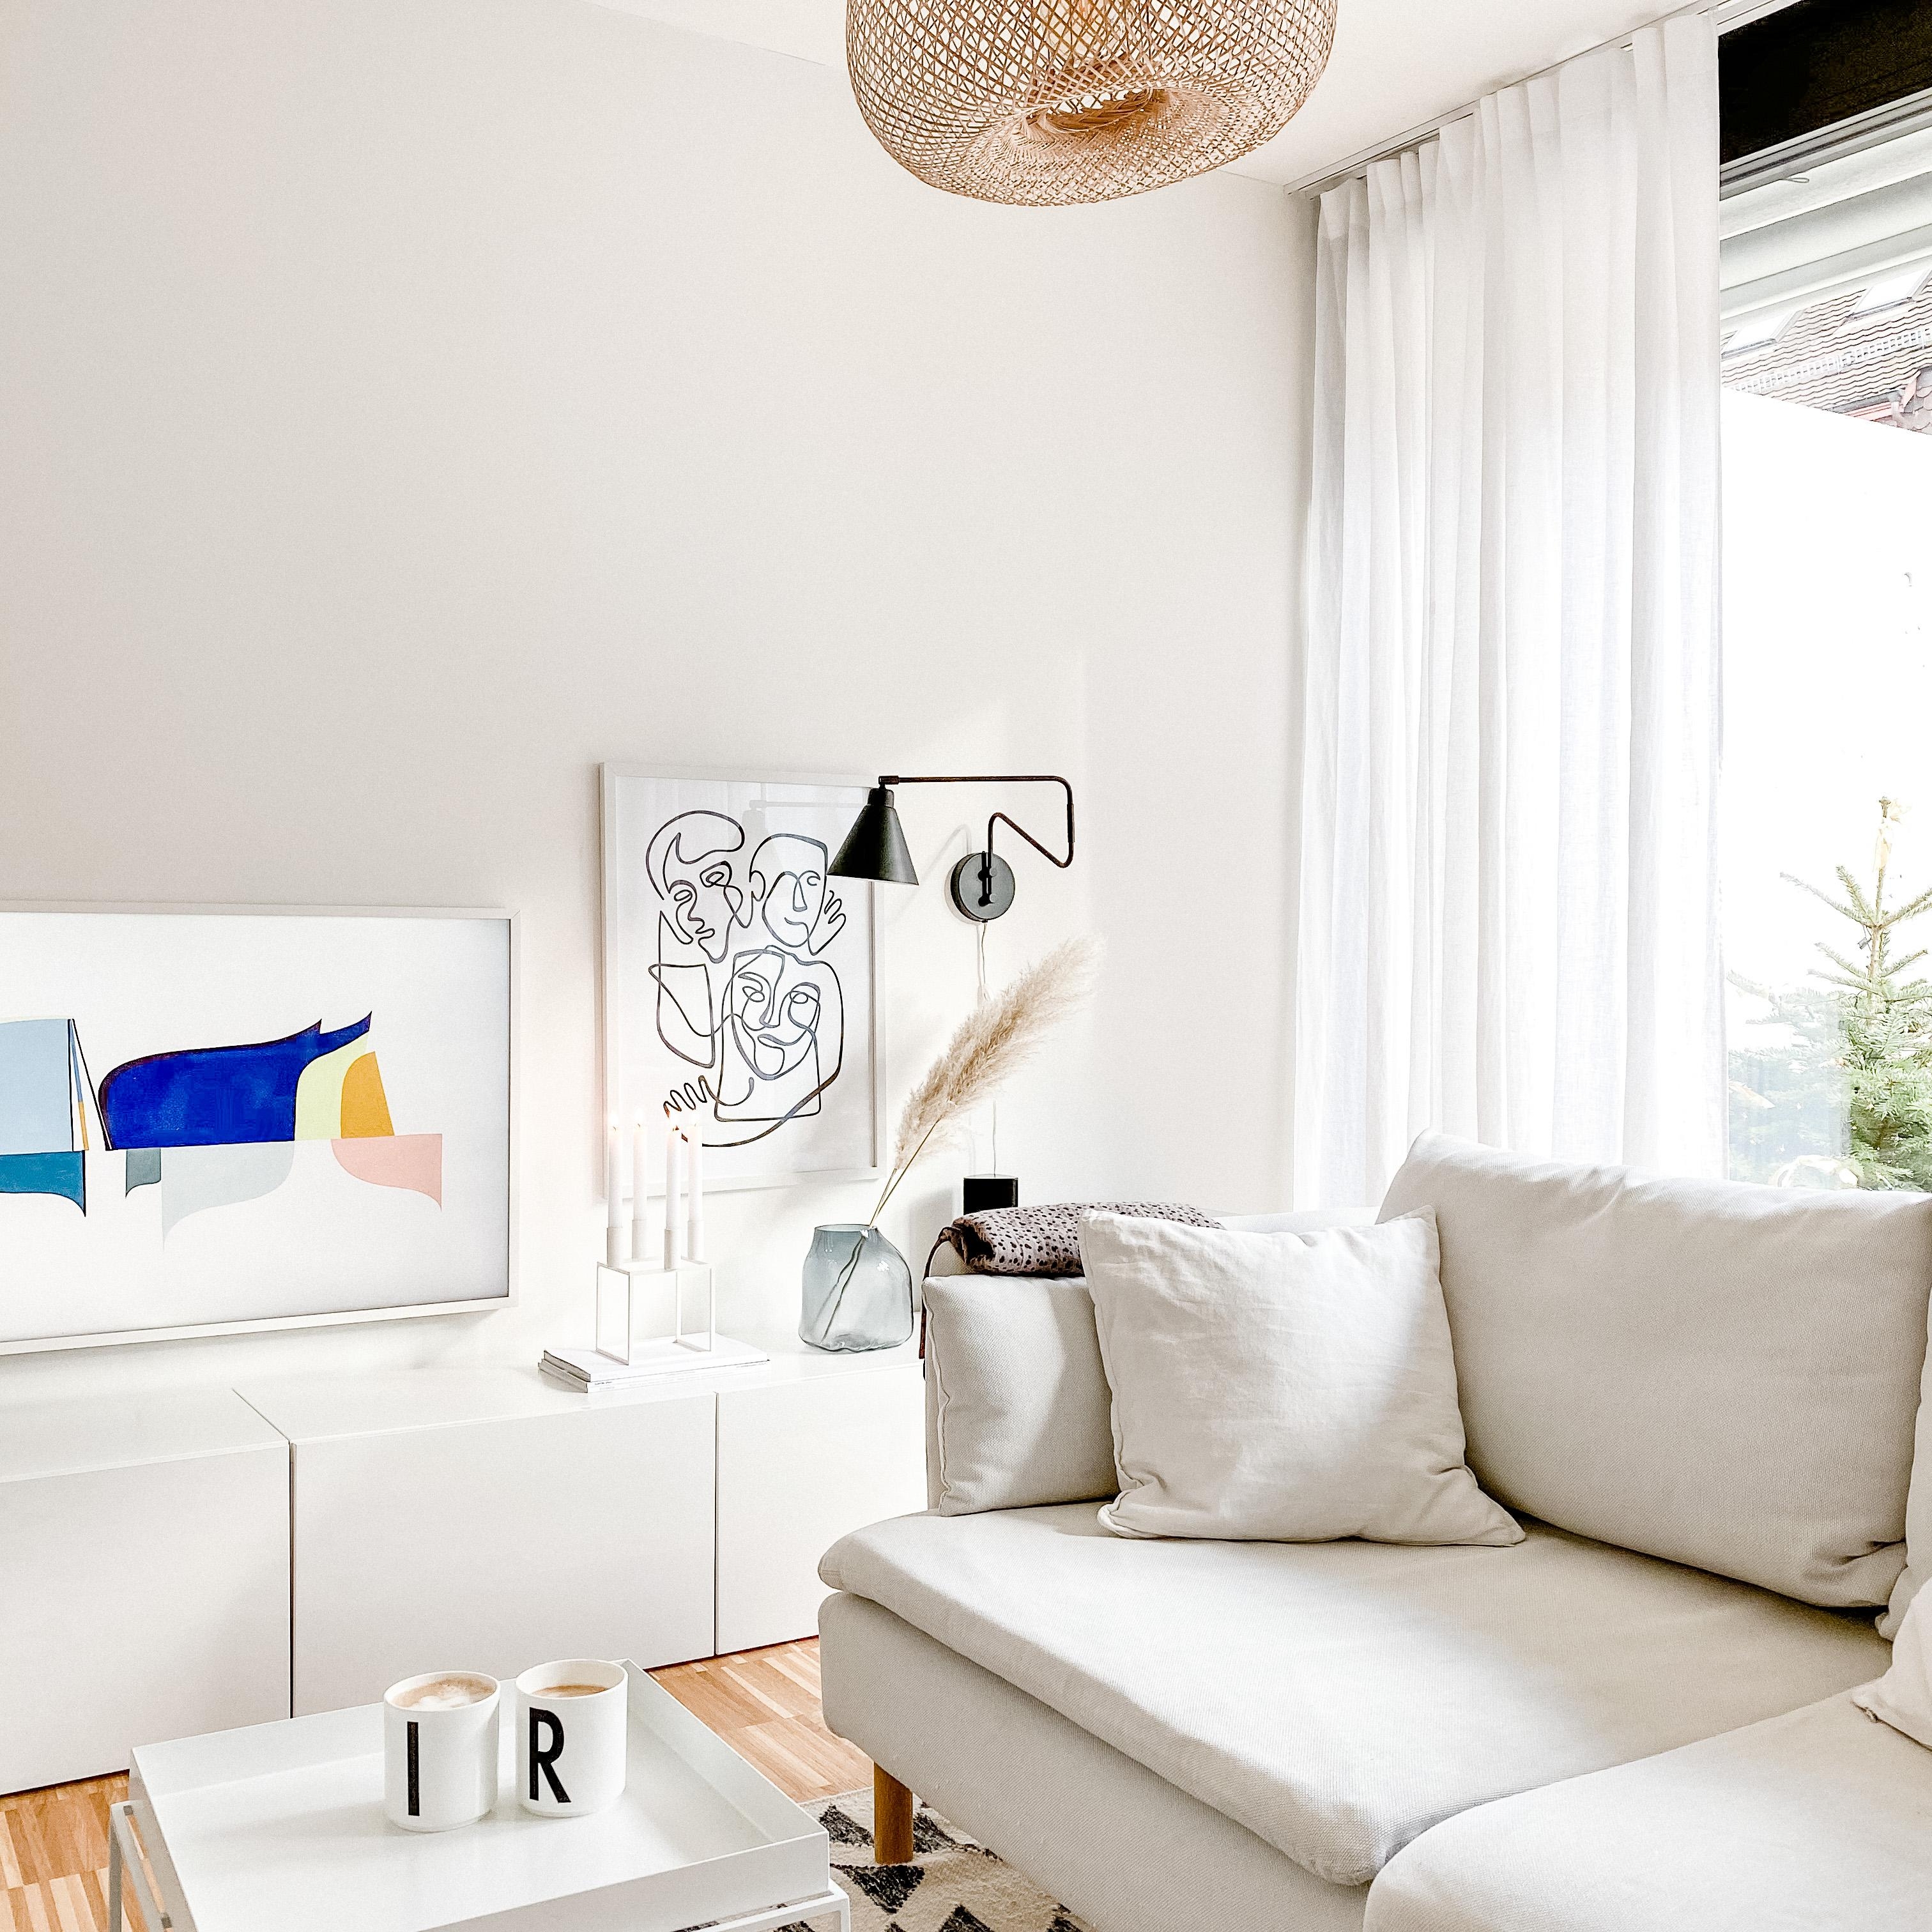 Die faulen Tage sind vorbei! #wohnzimmer #couch #theframe #söderhamn #whiteliving